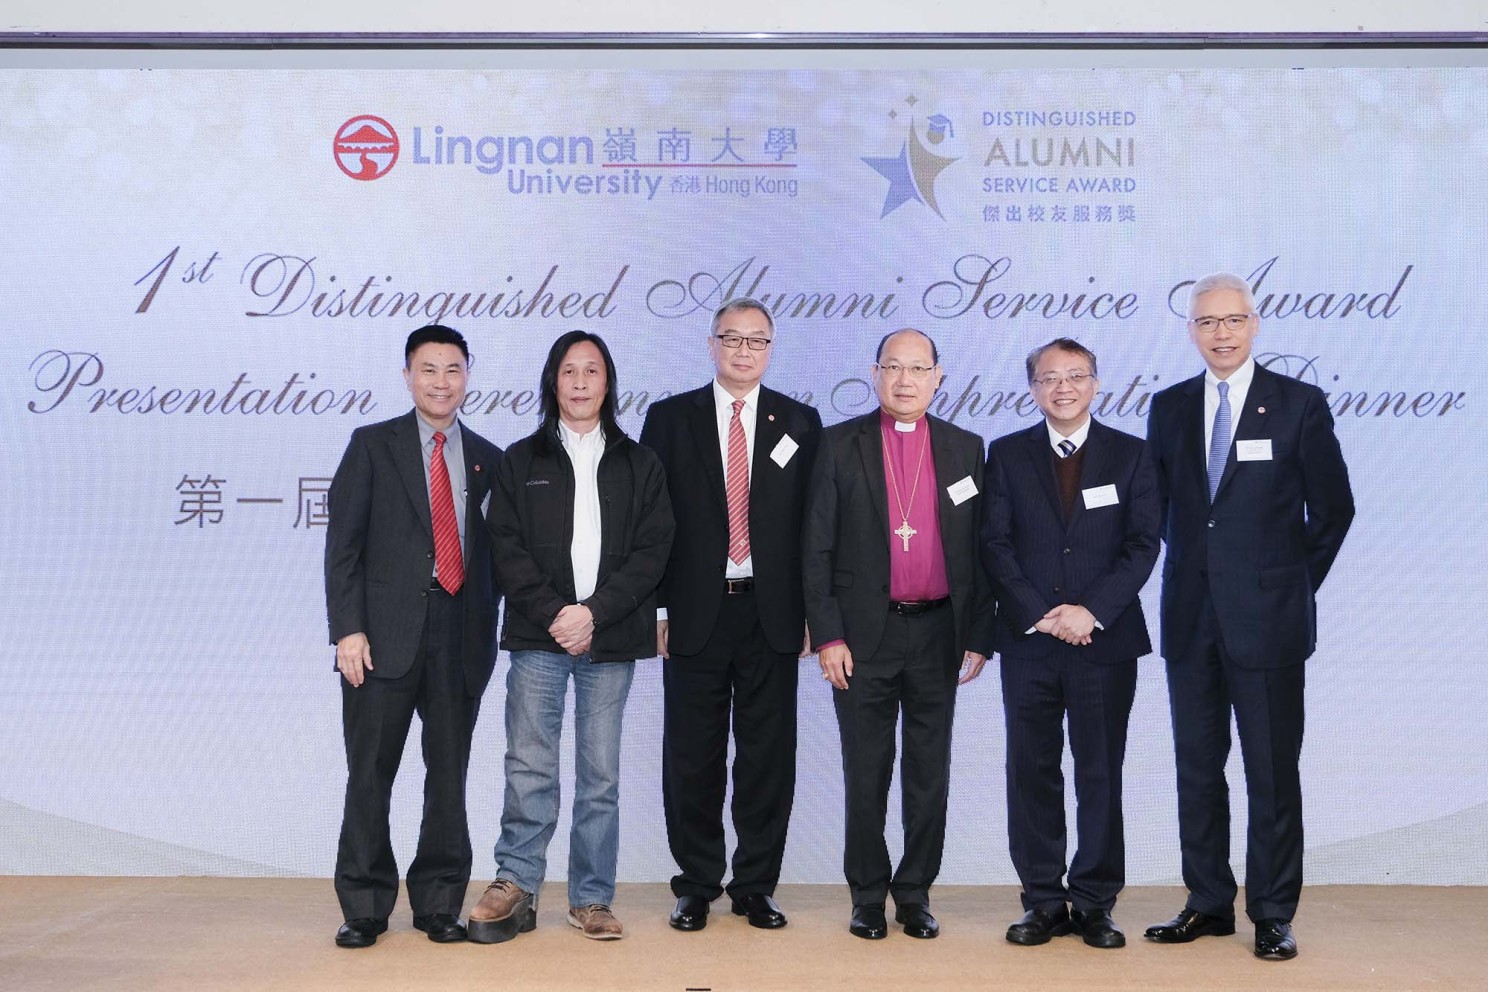 （左起）鄭國漢教授、邱禮濤博士、岑展文先生、鄺保羅大主教、吳桂行先生及歐陽伯權先生